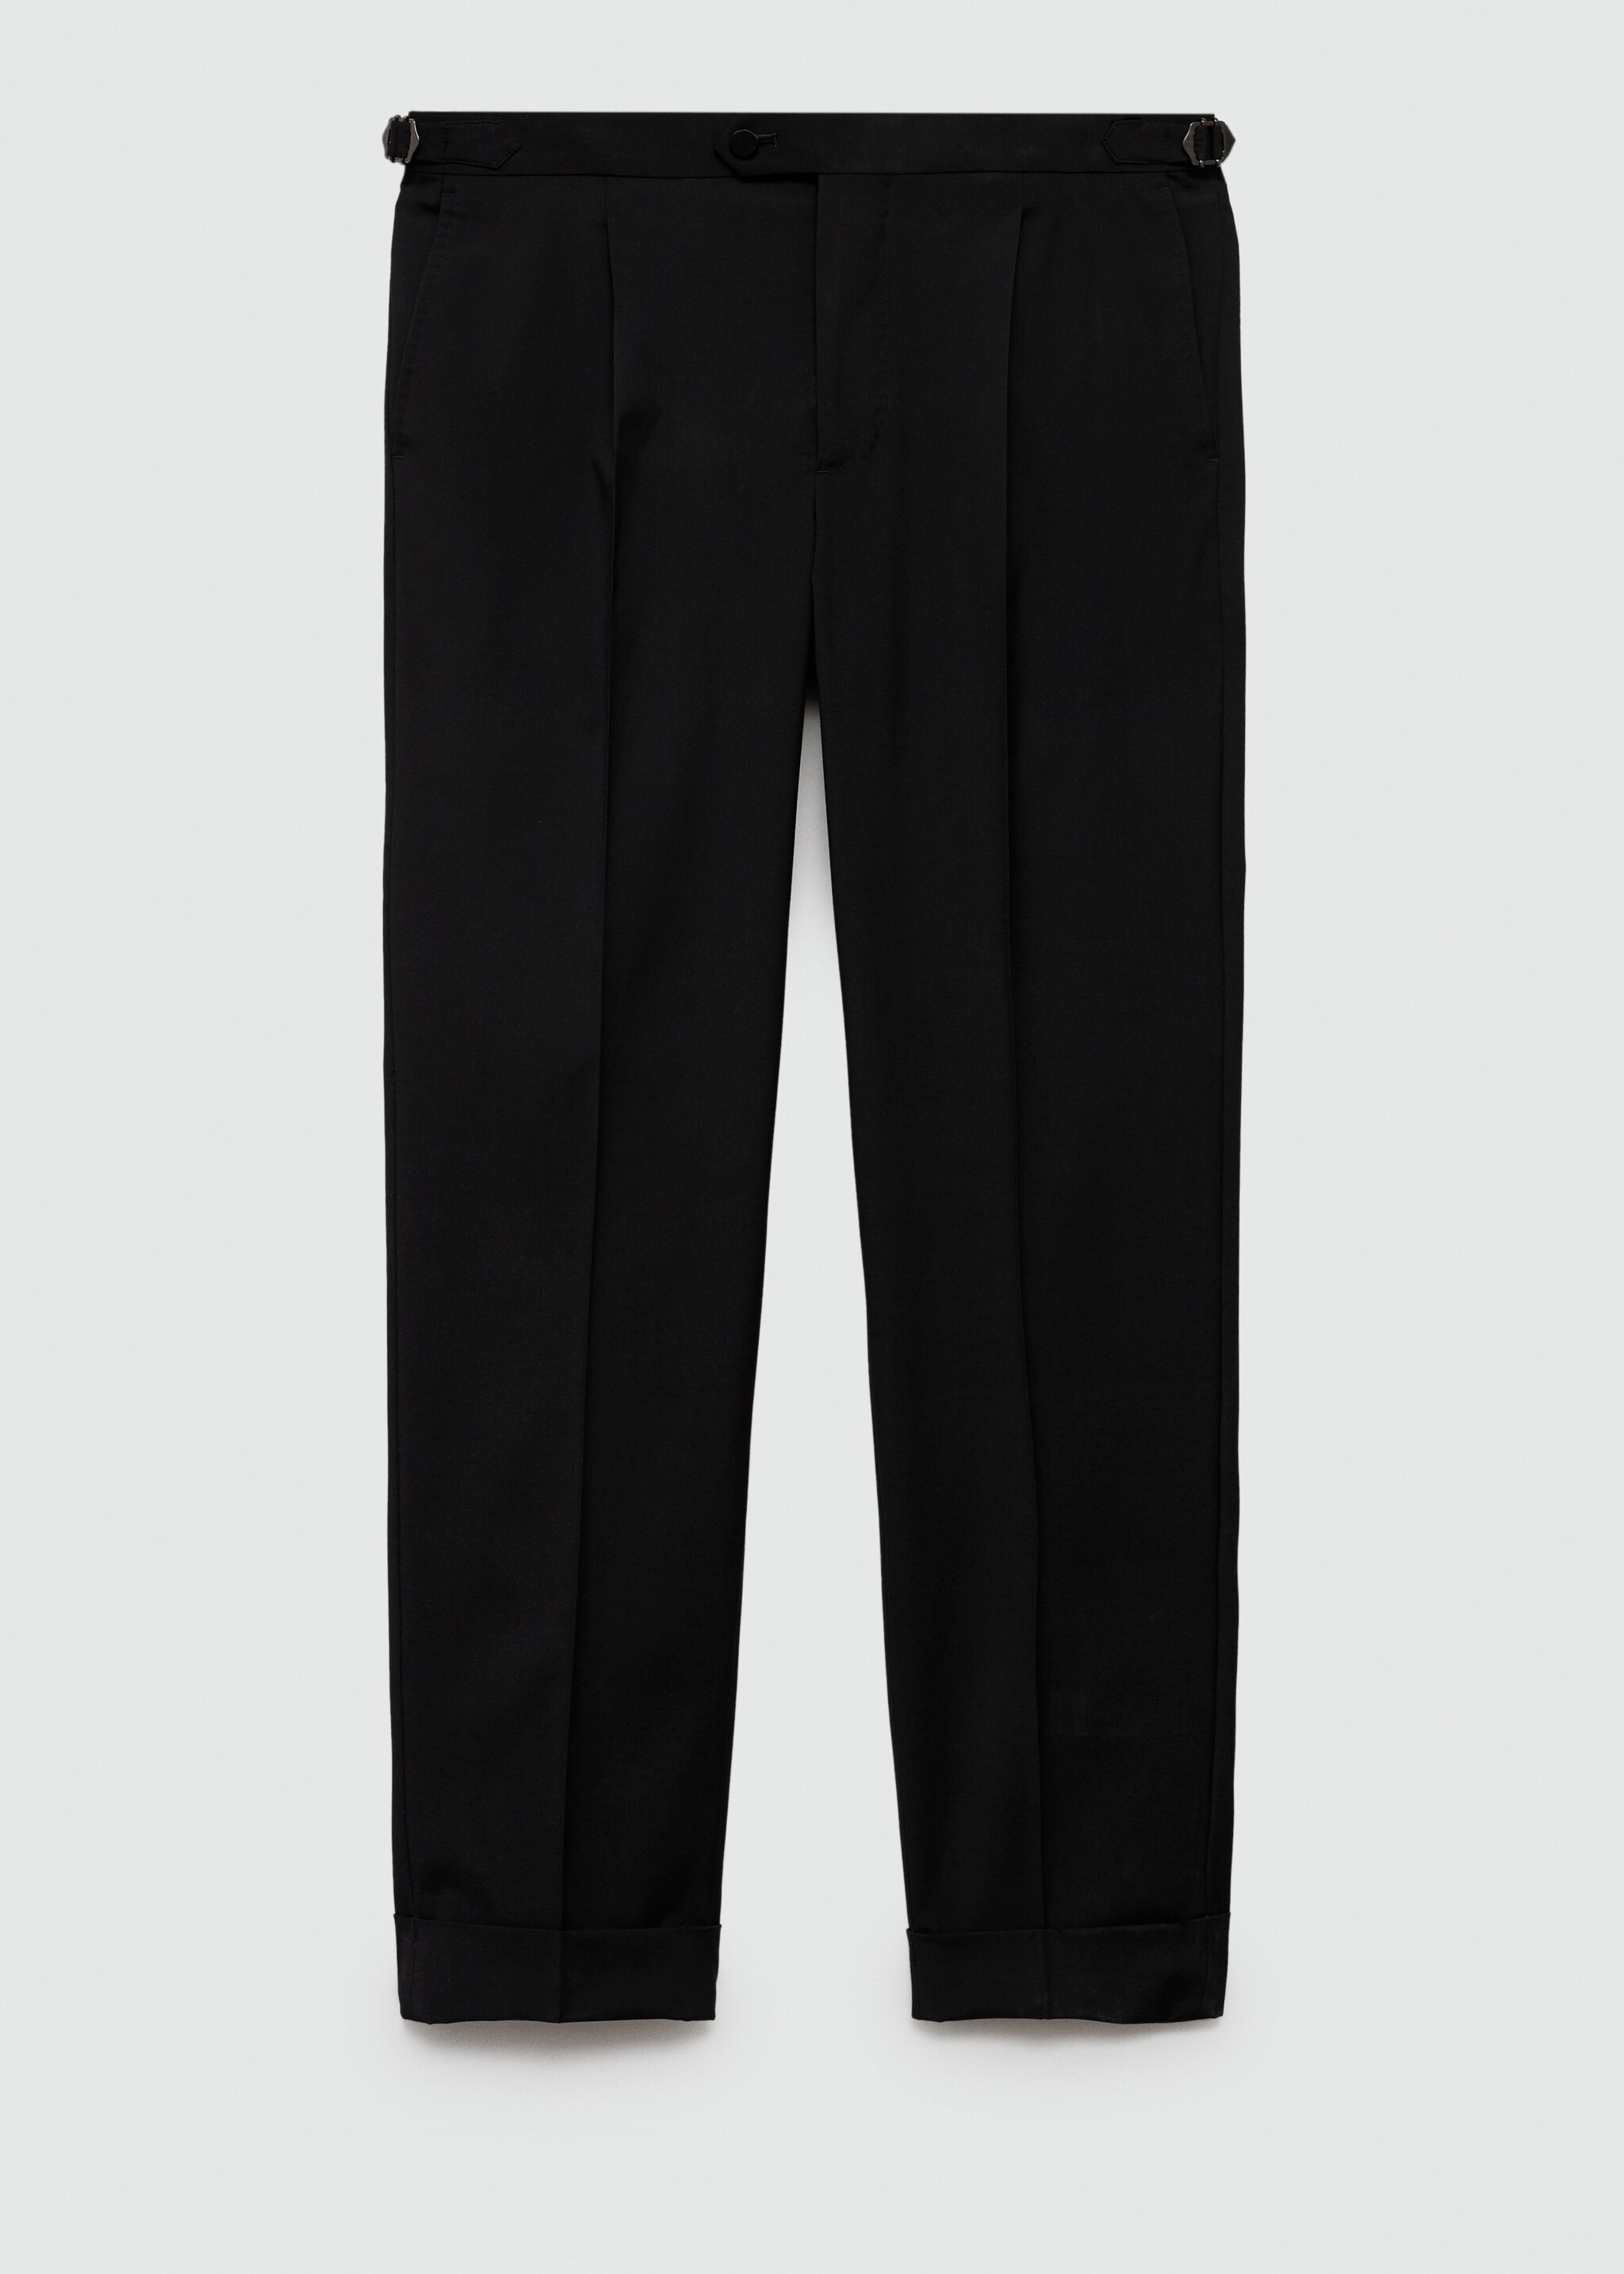 Παντελόνι κοστουμιού slim fit stretch - Προϊόν χωρίς μοντέλο